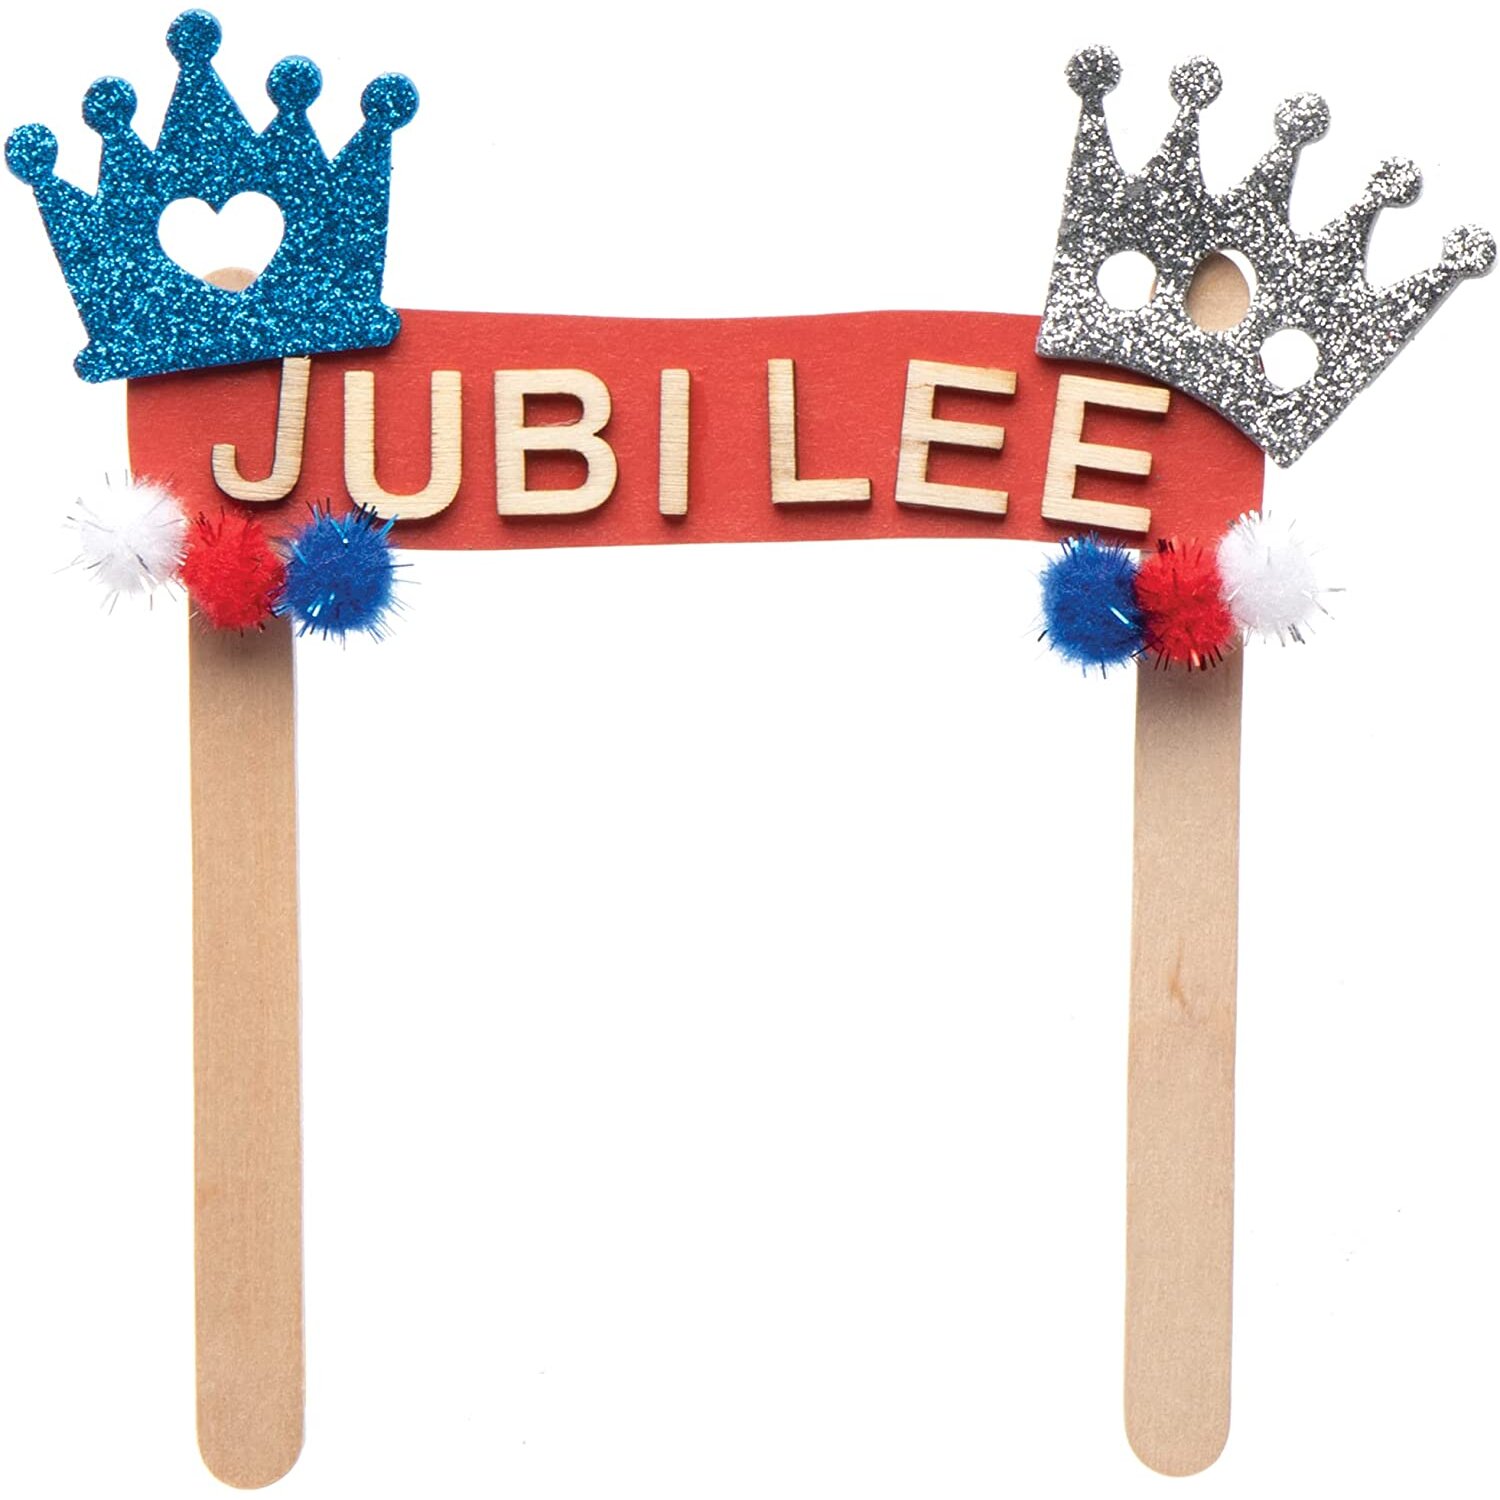 Baker Ross Platinum Jubilee Glitter Crown Sticker Set for Kids - Pack of 150, Craft Supplies, (PJ200)